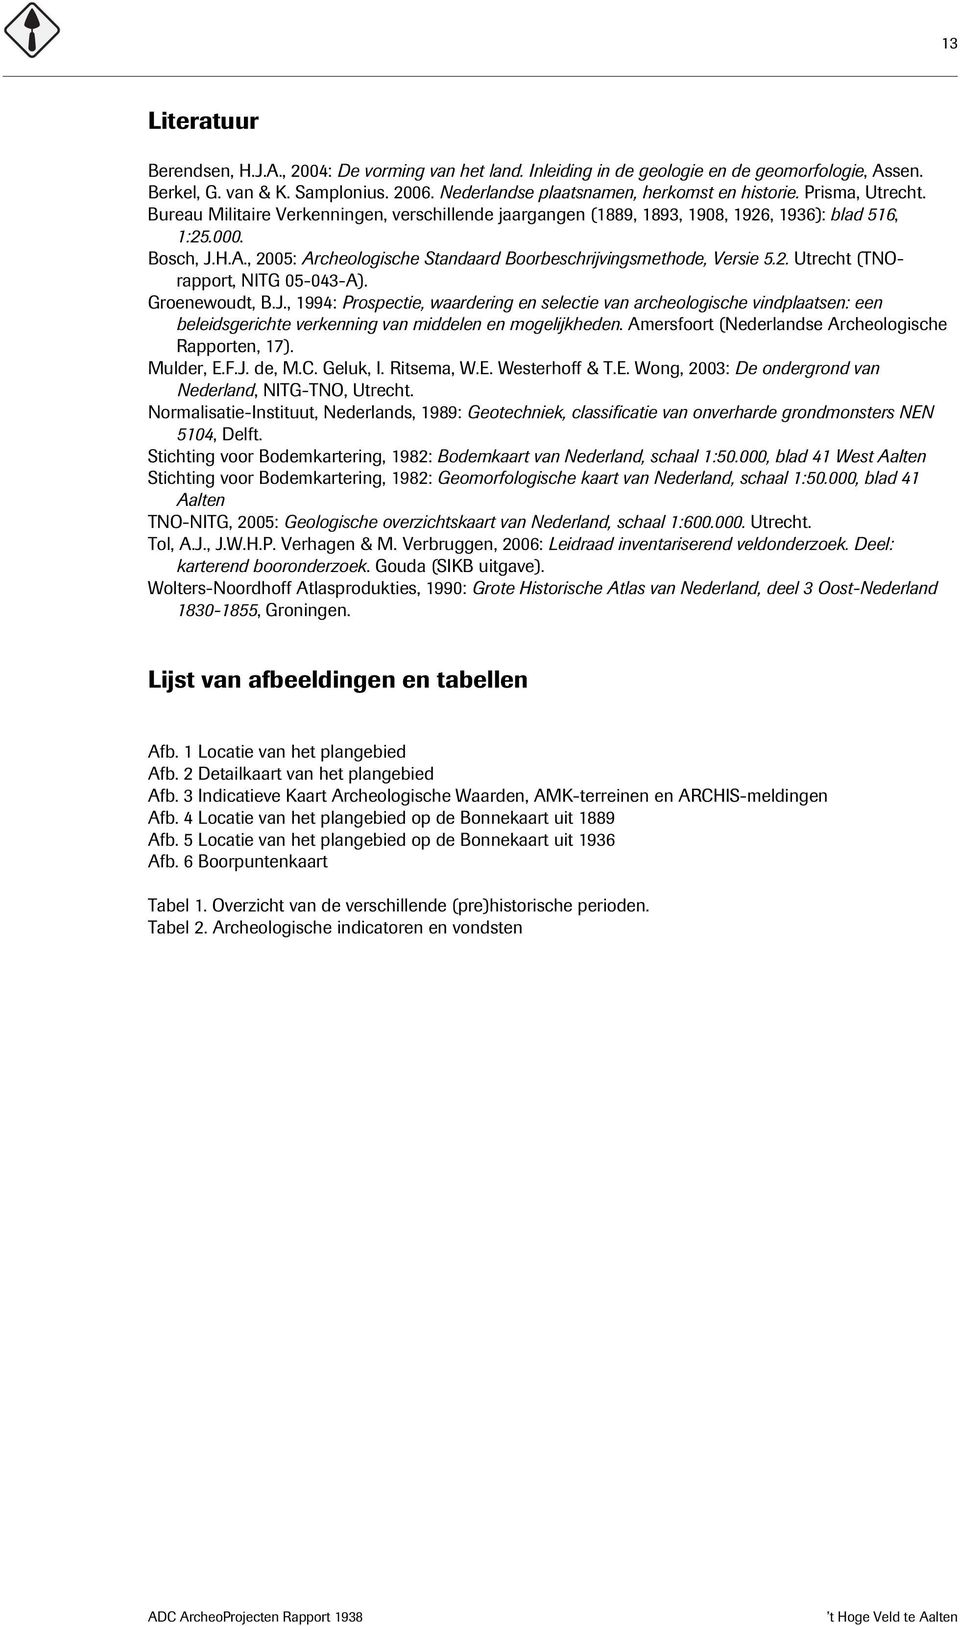 , 2005: Archeologische Standaard Boorbeschrijvingsmethode, Versie 5.2. Utrecht (TNOrapport, NITG 05-043-A). Groenewoudt, B.J.